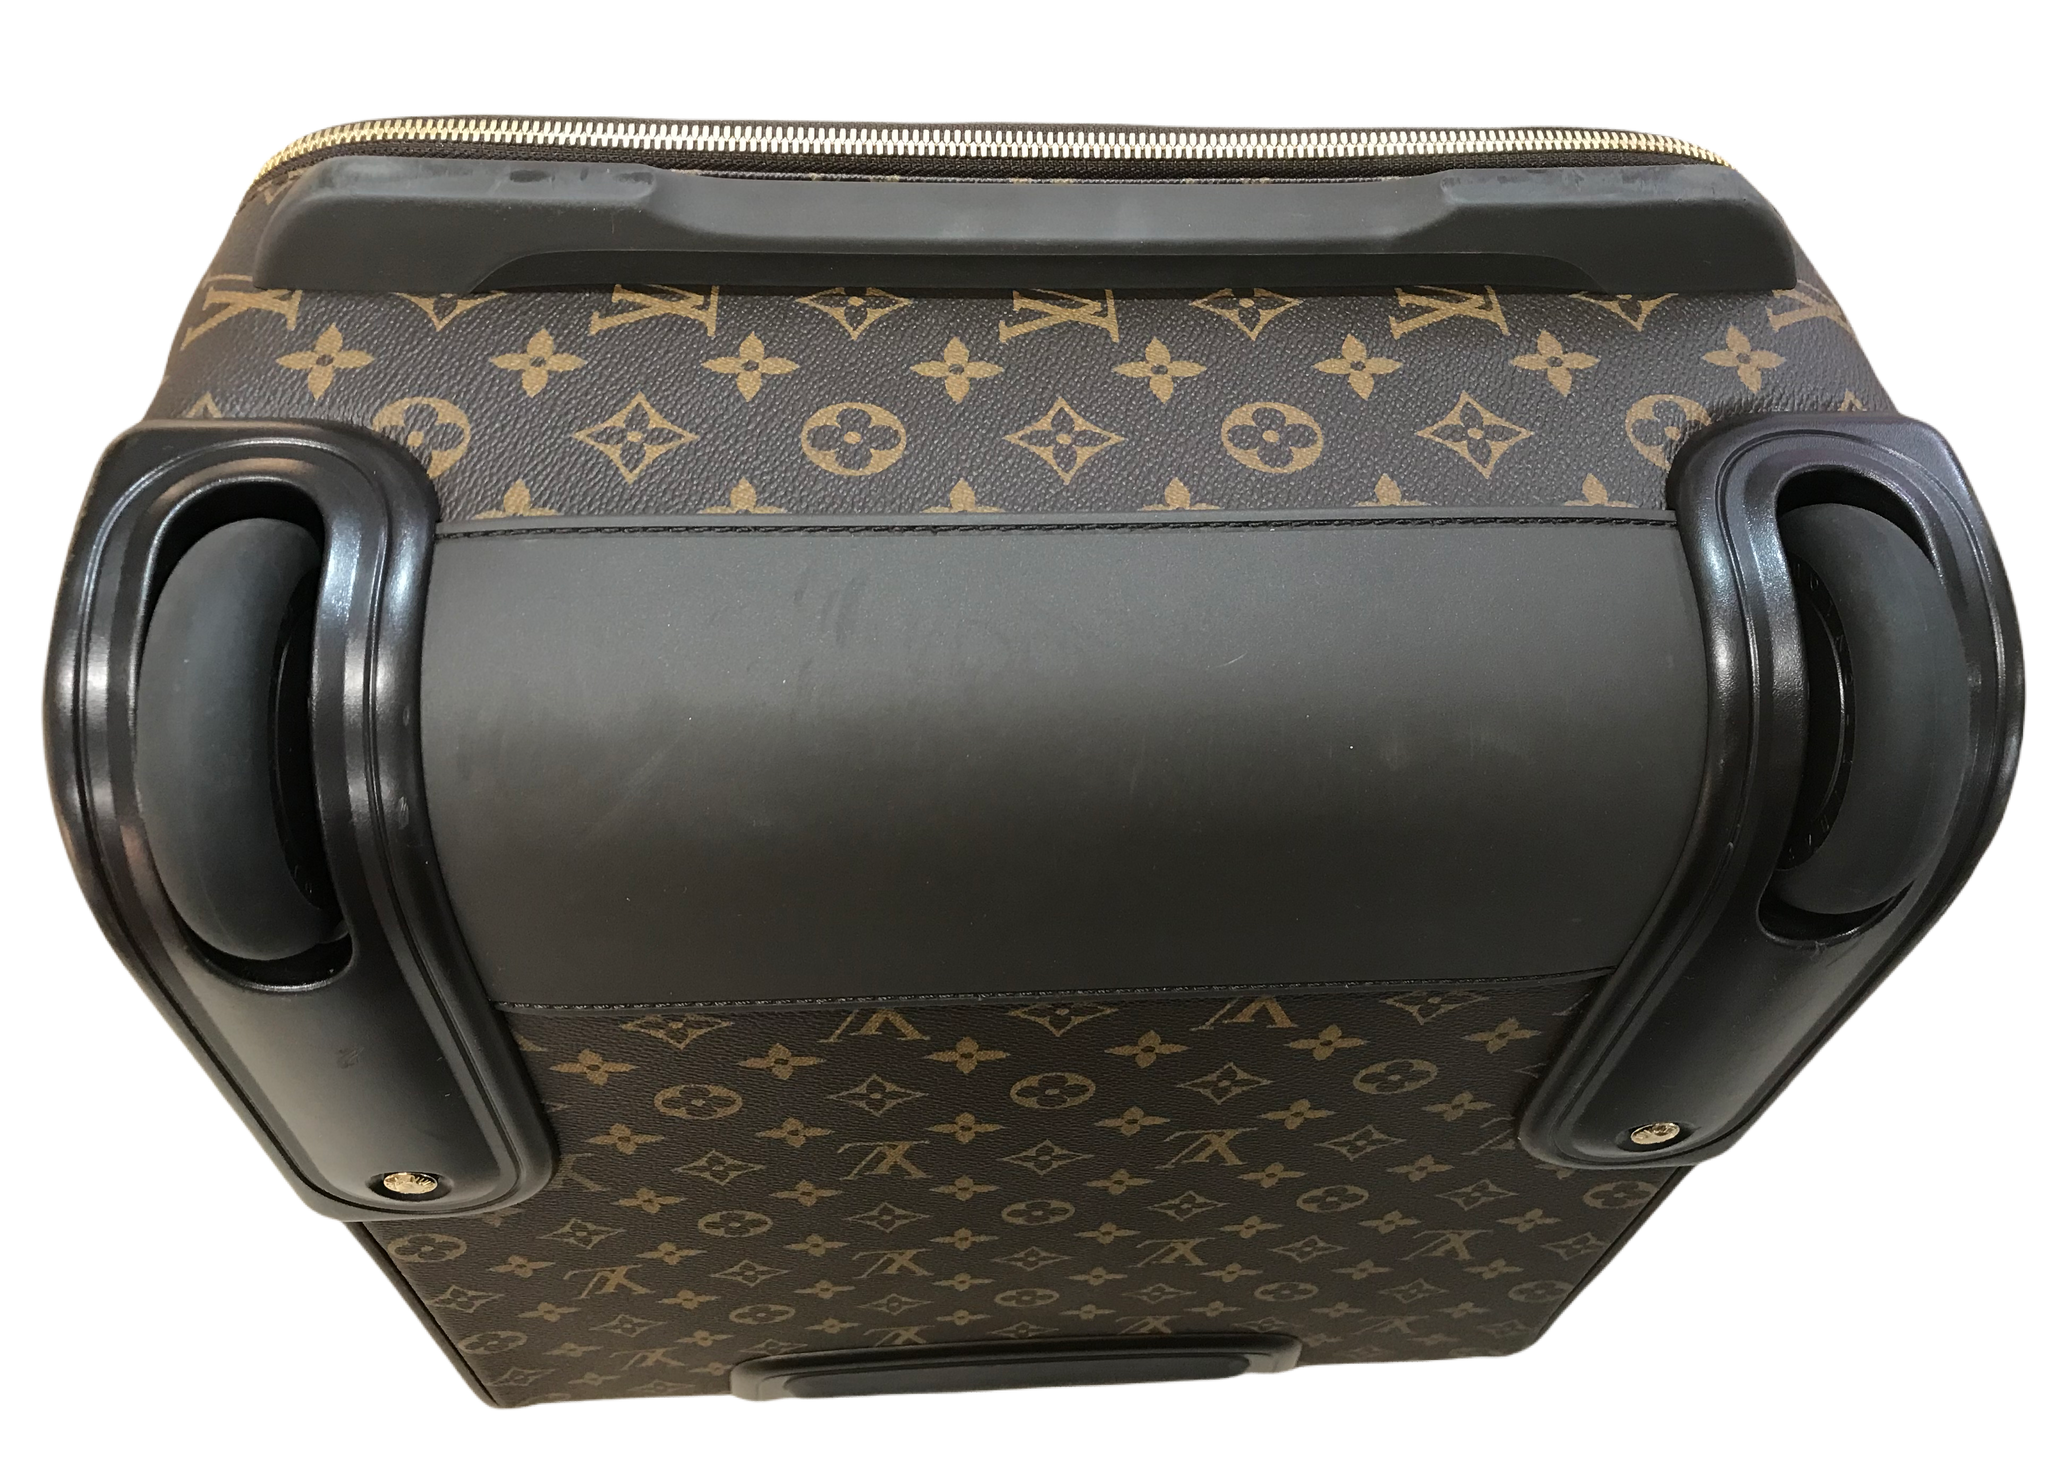 Pegase 45 Rolling Luggage - Monogram – ZAK BAGS ©️